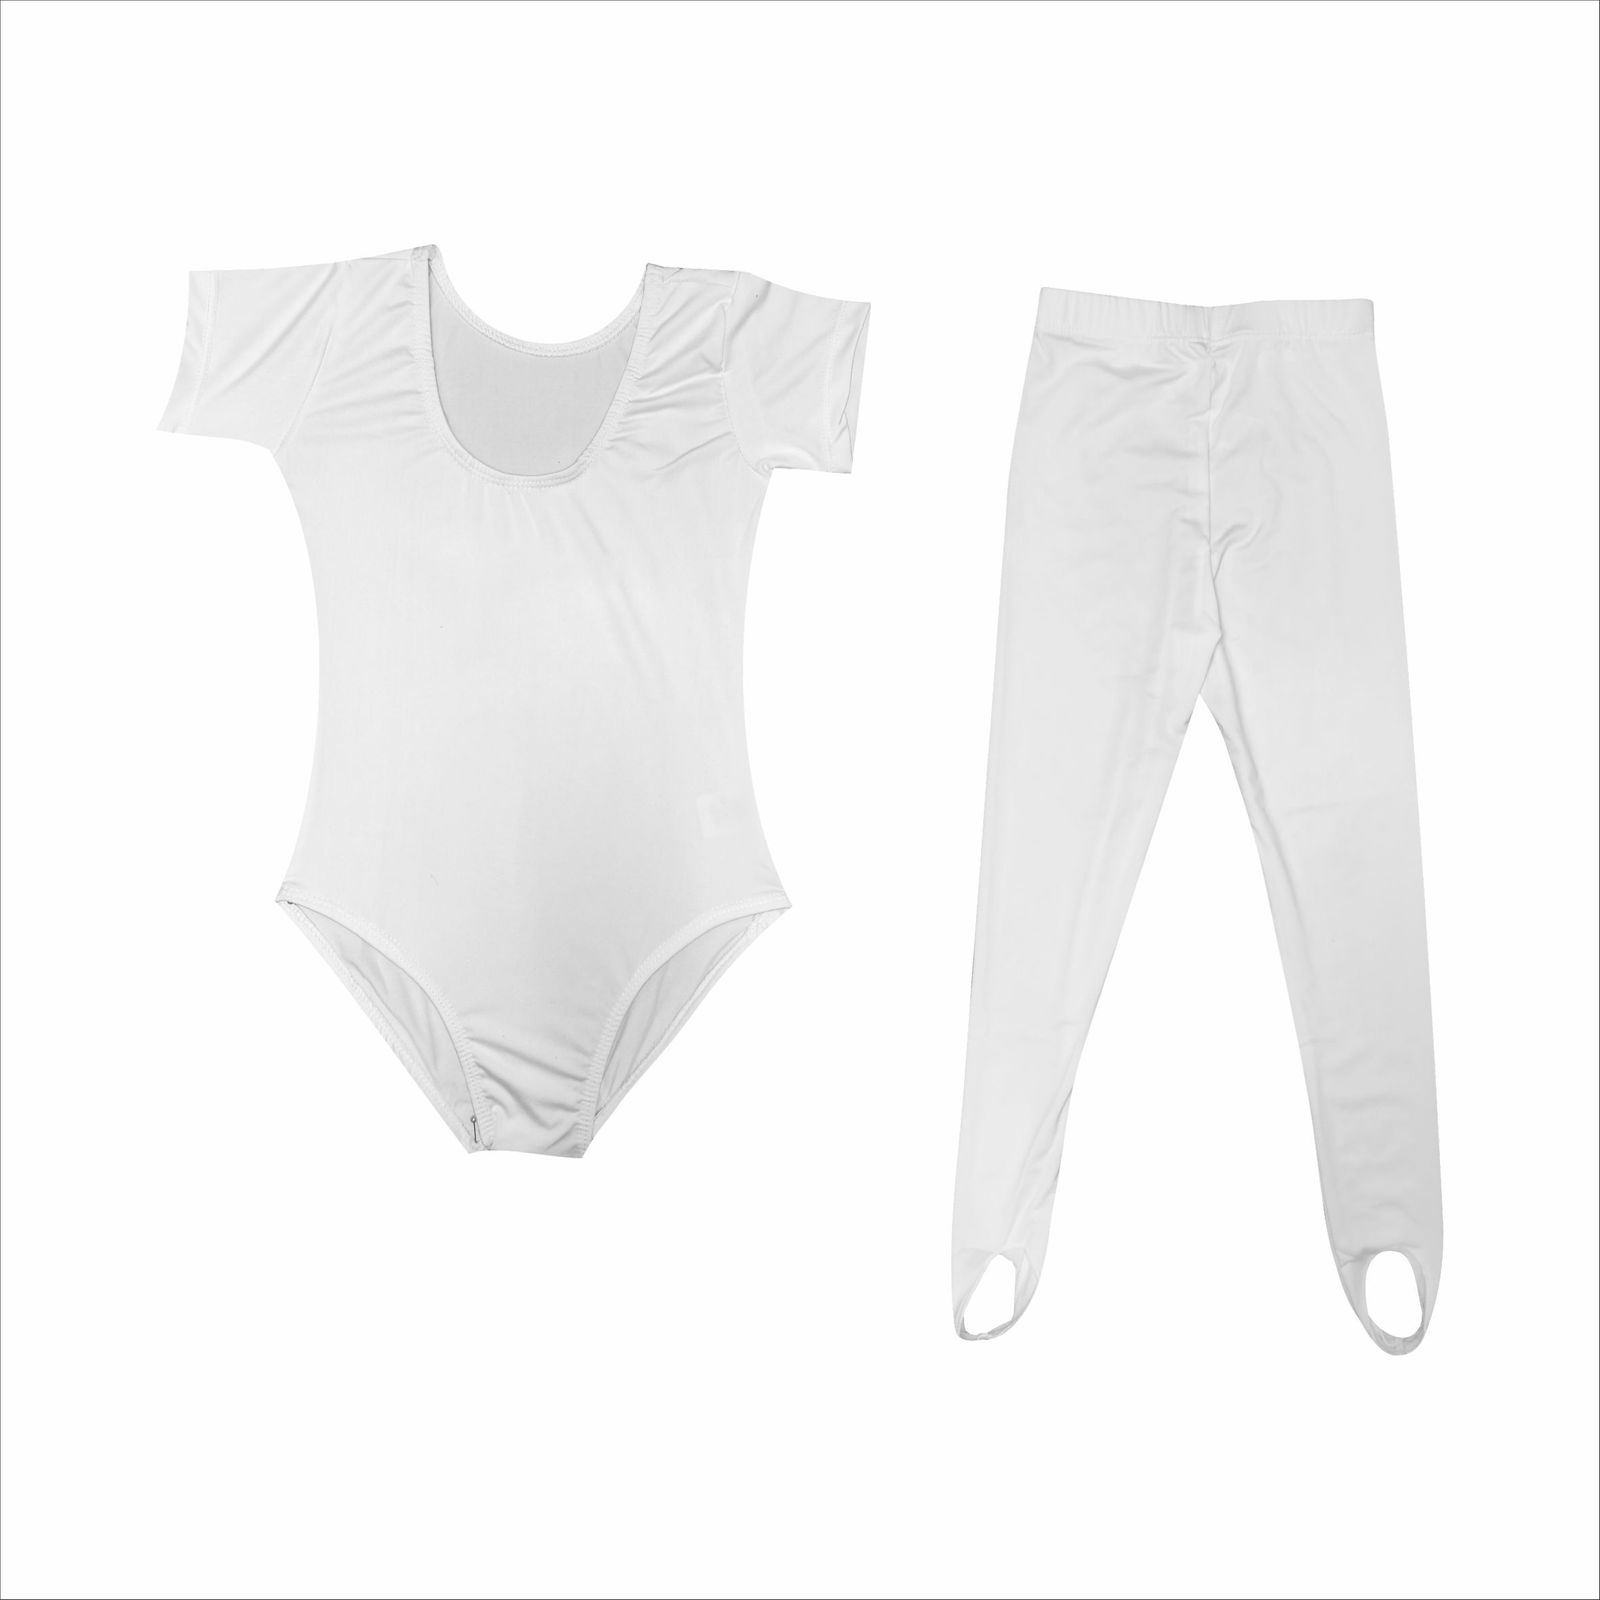 ست تی شرت و لگینگ ورزشی دخترانه مدل ژیمناستیک رنگ سفید -  - 1